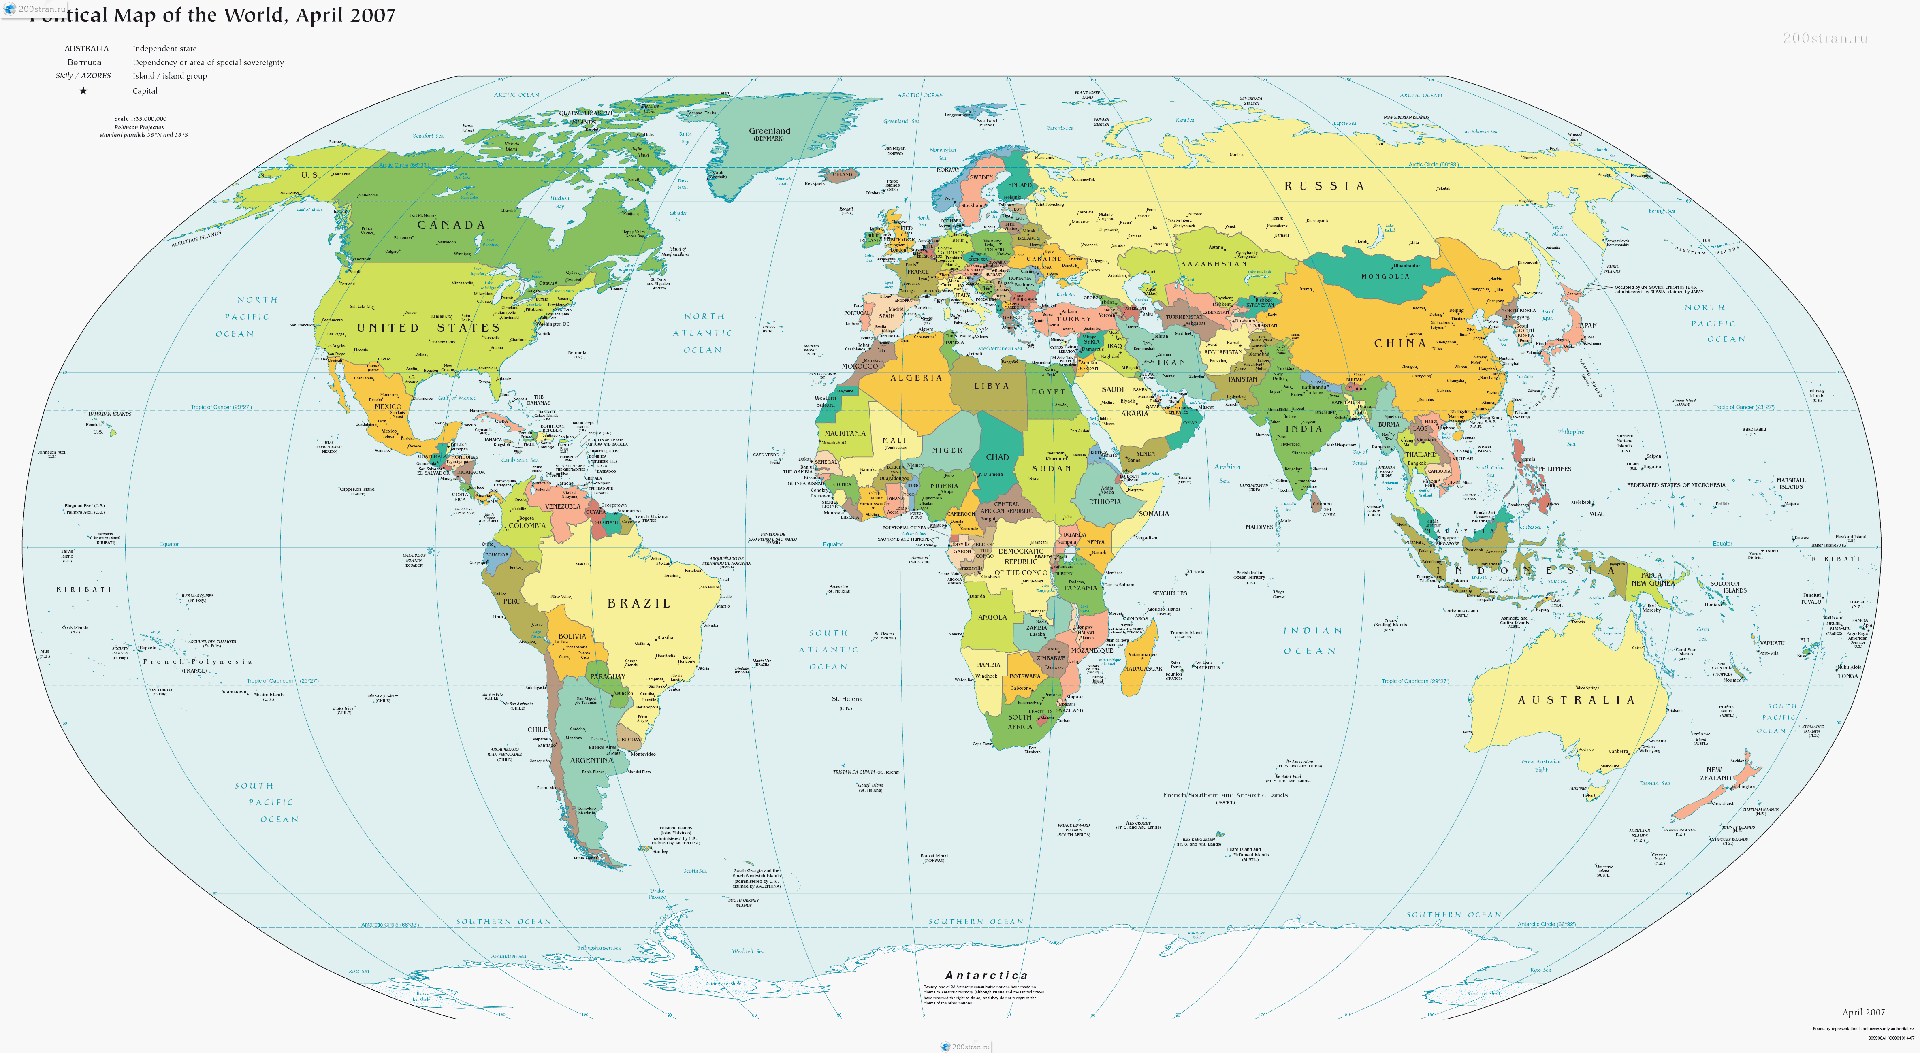 Политическая карта мира без названий стран